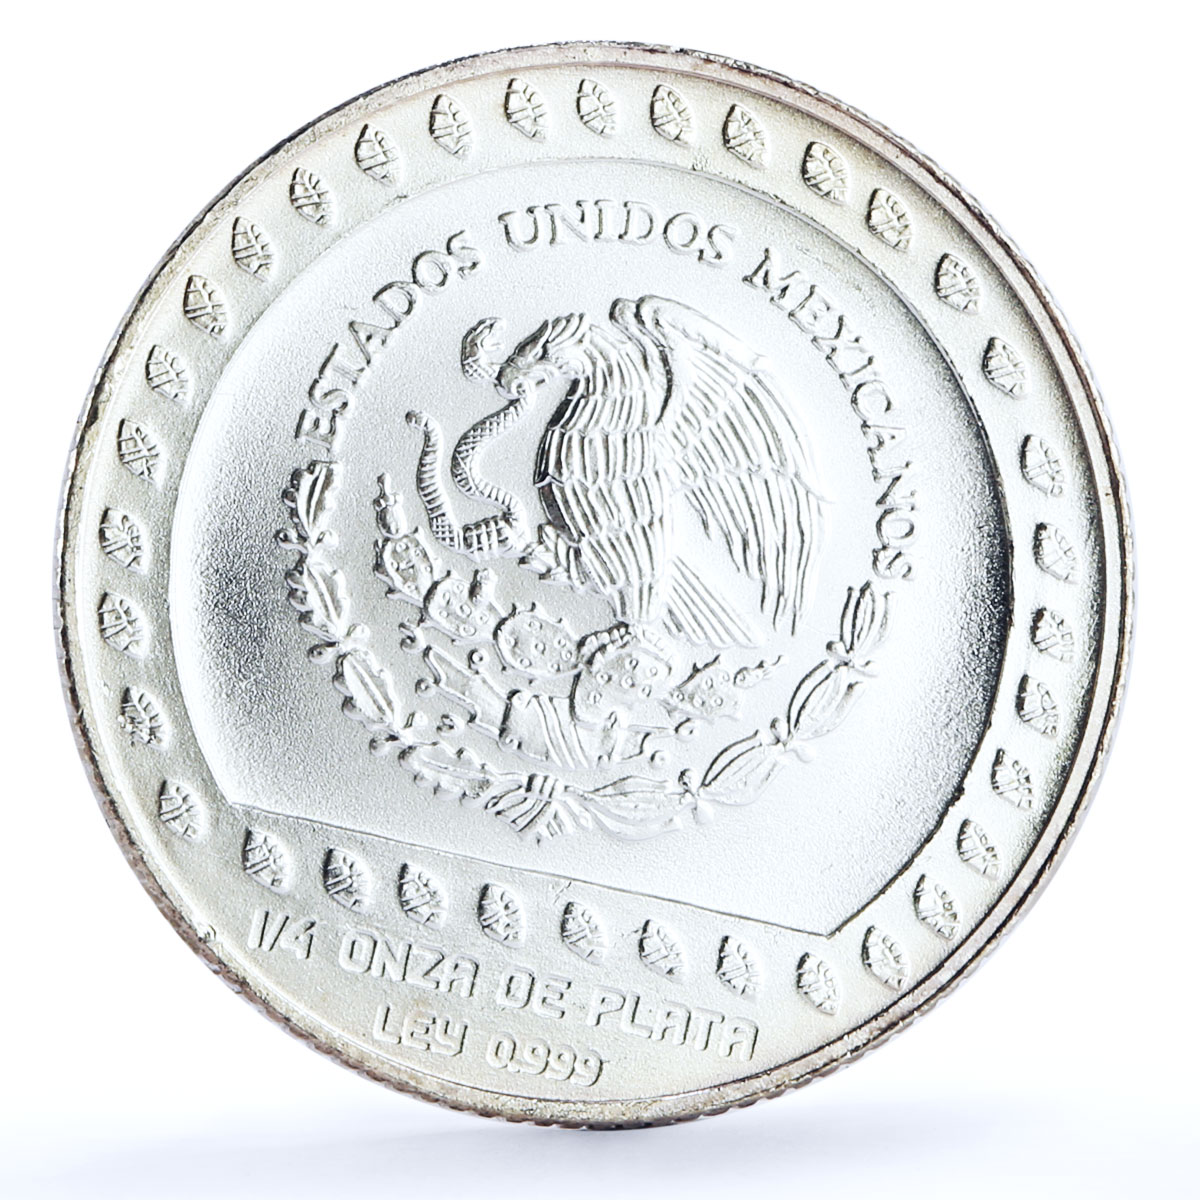 Mexico set of 3 coins Precolombina Guerrero Aguila Eagle Warrior Ag coins 1992